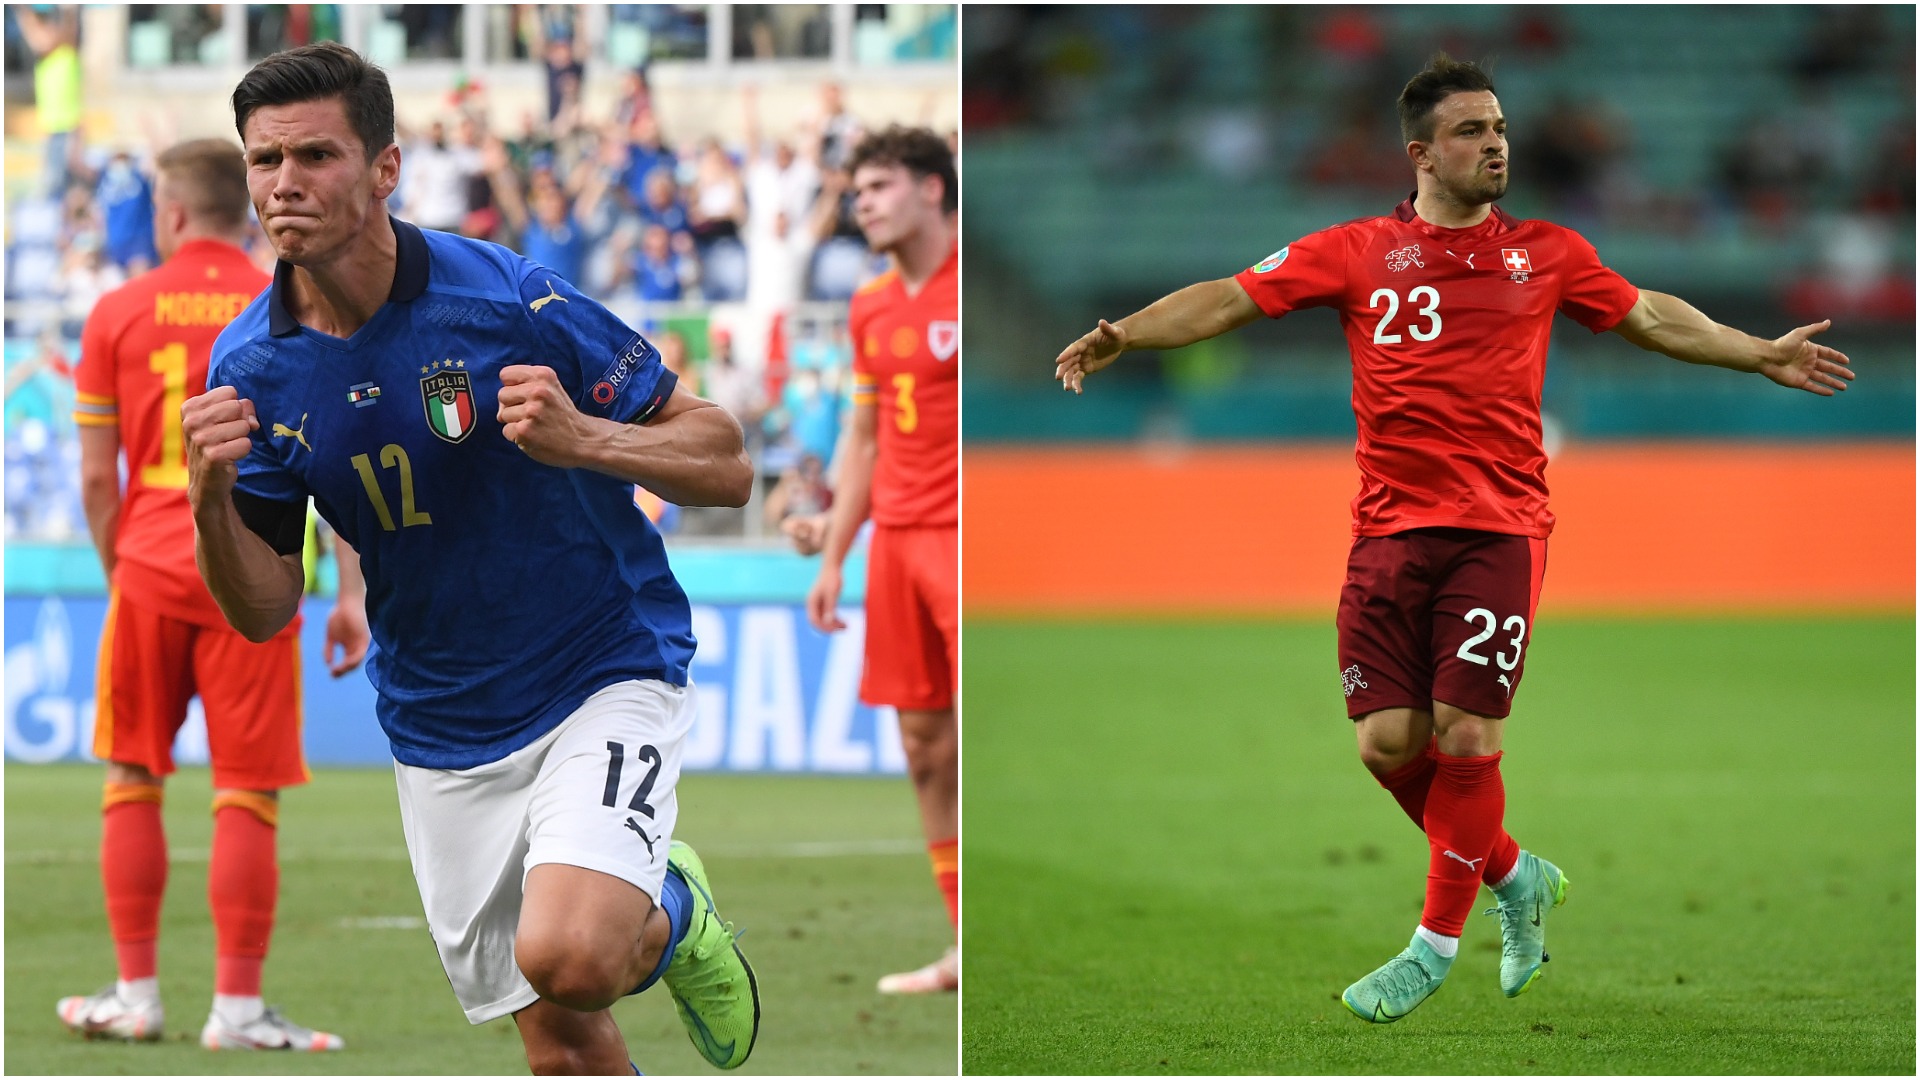 EURO 2020 | Italia - Țara Galilor 1-0 și Elveția - Turcia 3-1. Hațegan elimină direct un galez! Luptă pentru locul 2